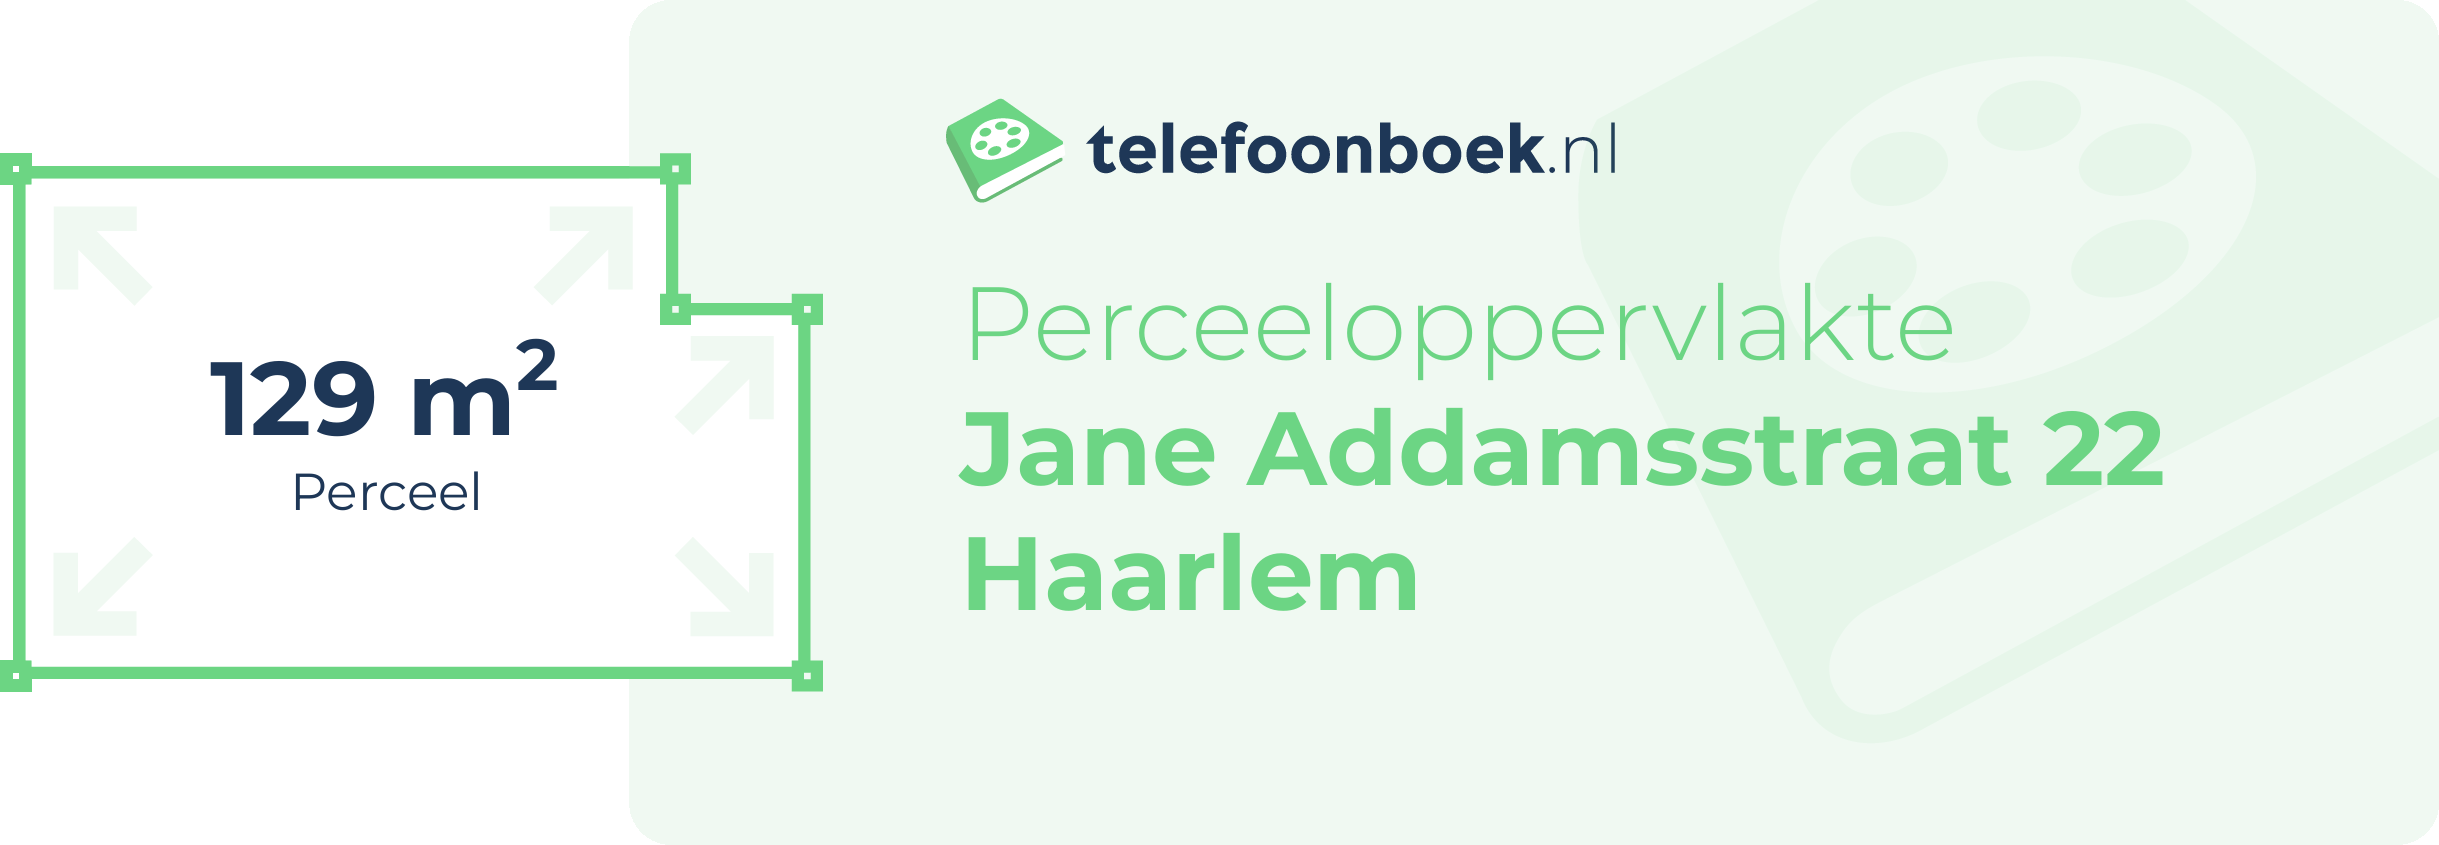 Perceeloppervlakte Jane Addamsstraat 22 Haarlem